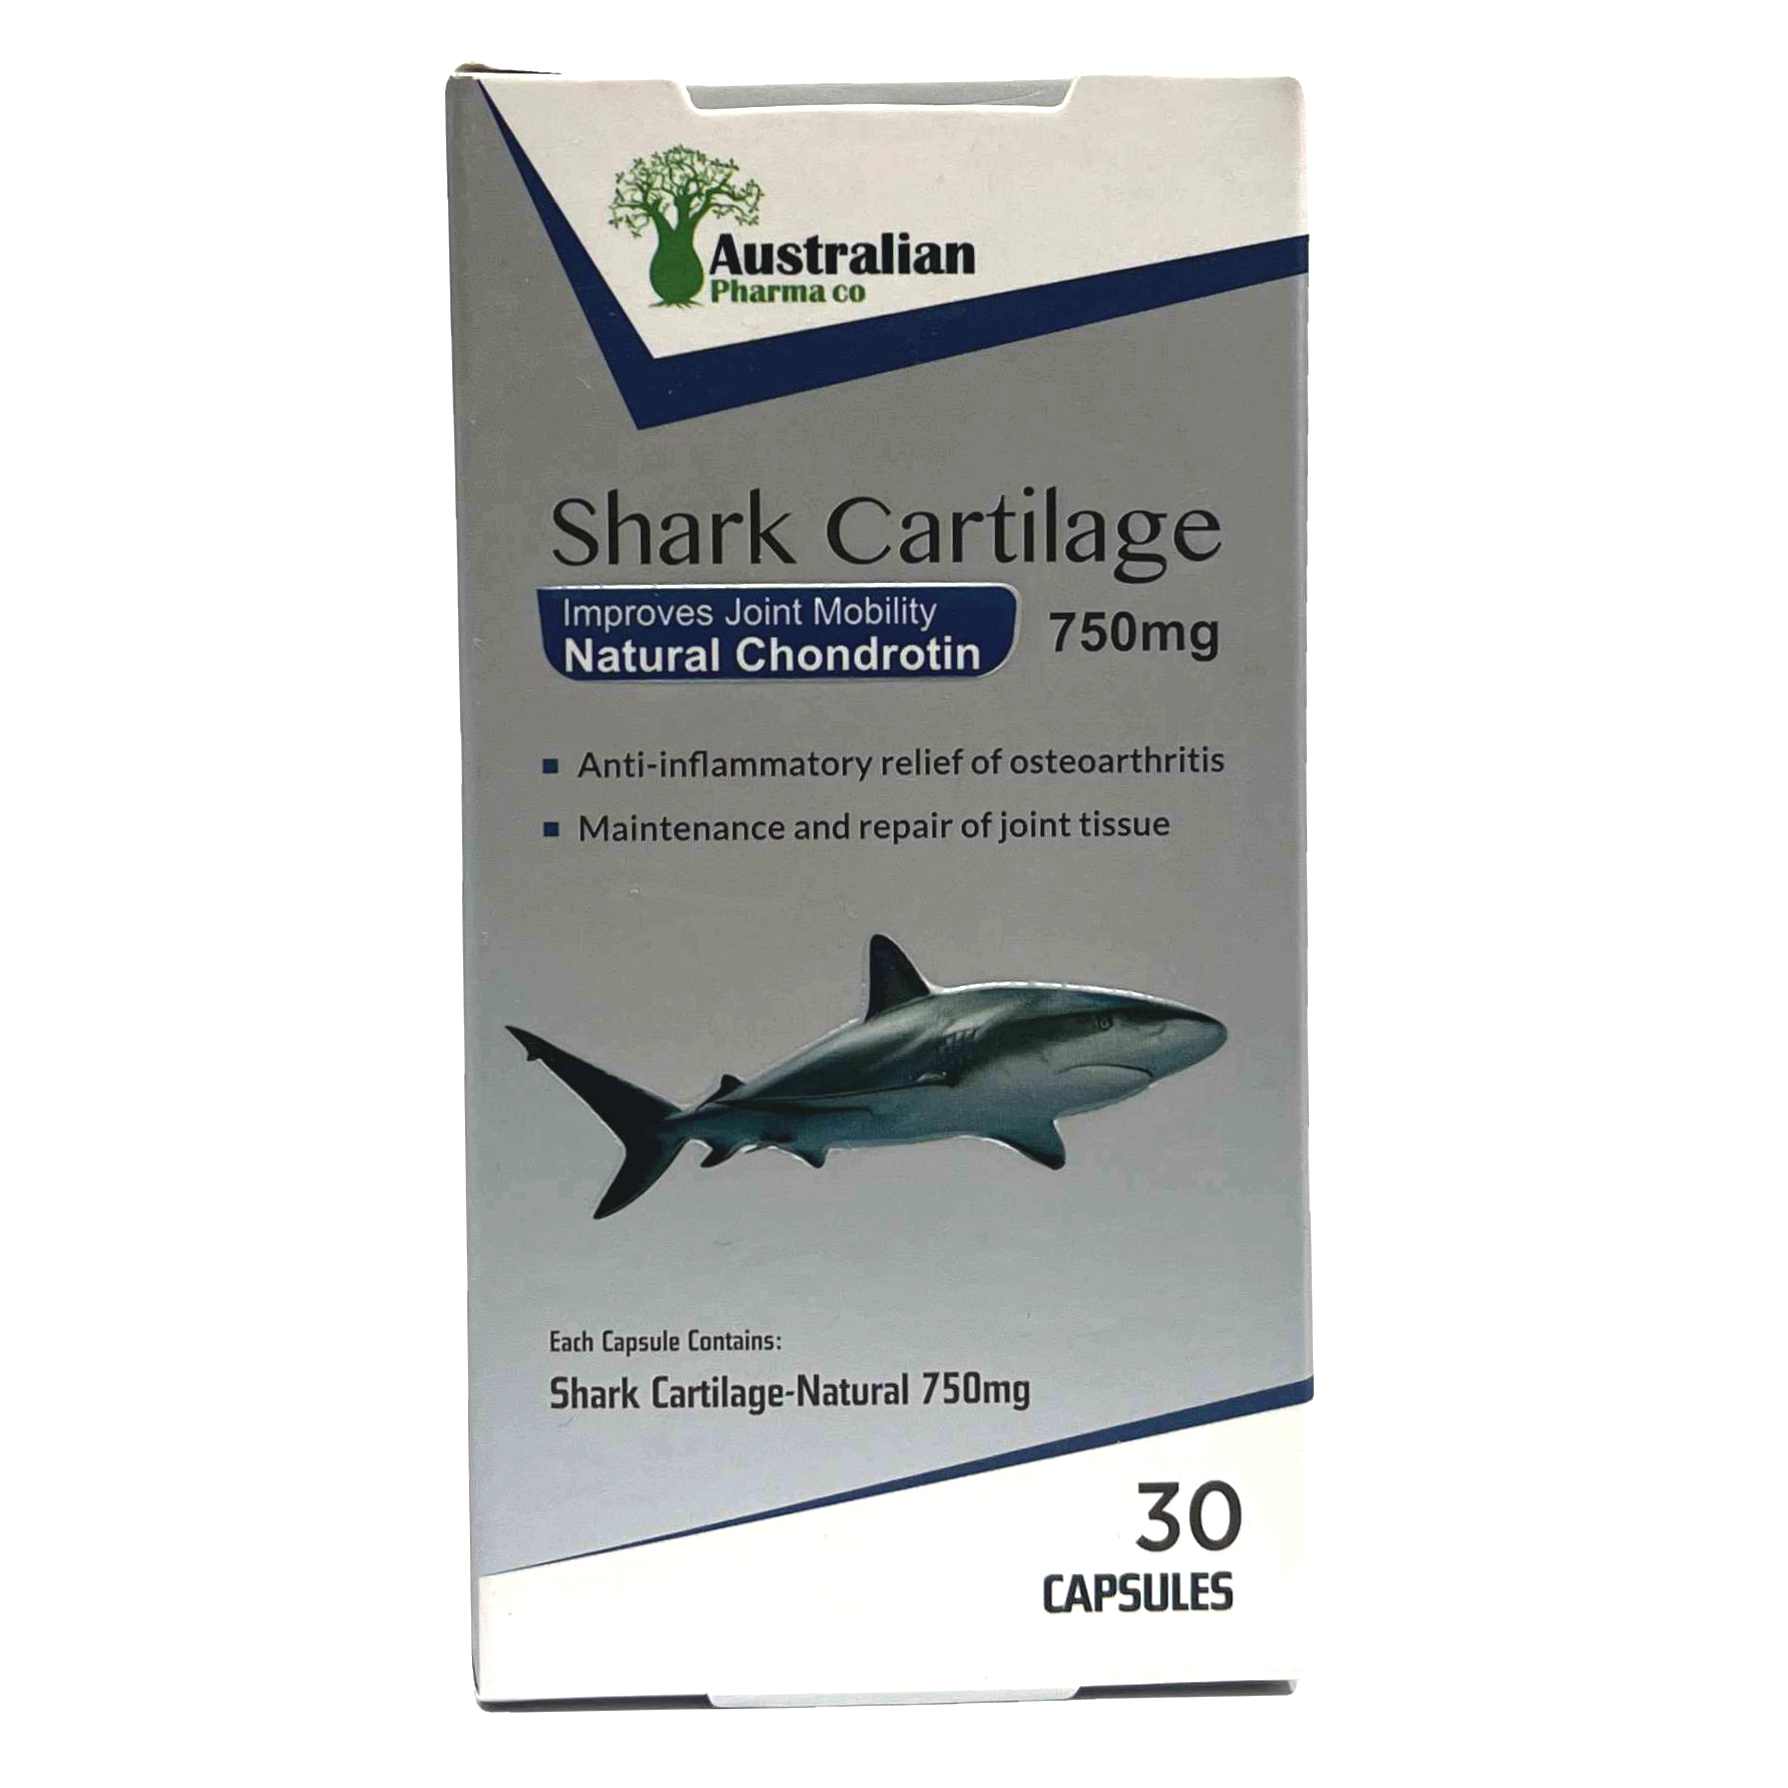 کپسول شارک کارتیلیج 750 گرم غضروف کوسه ماهی Australian Pharma Shark Cartilage